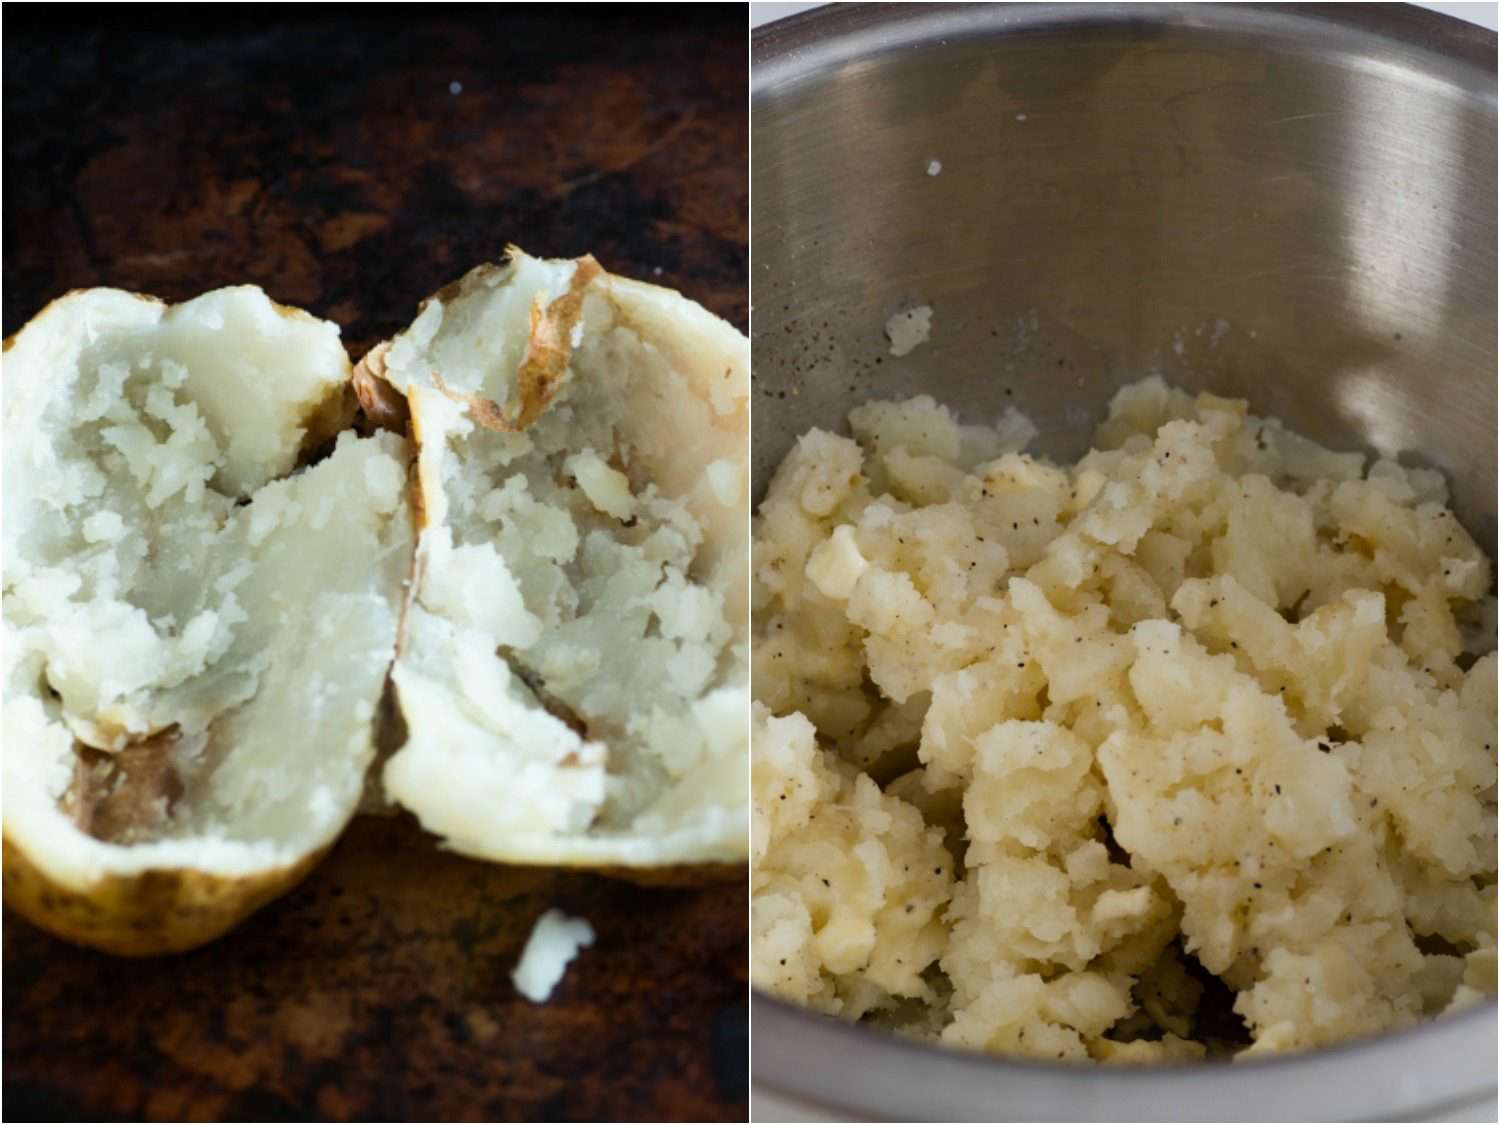 分裂的图像显示一半烤土豆和金属碗与土豆泥在里面。